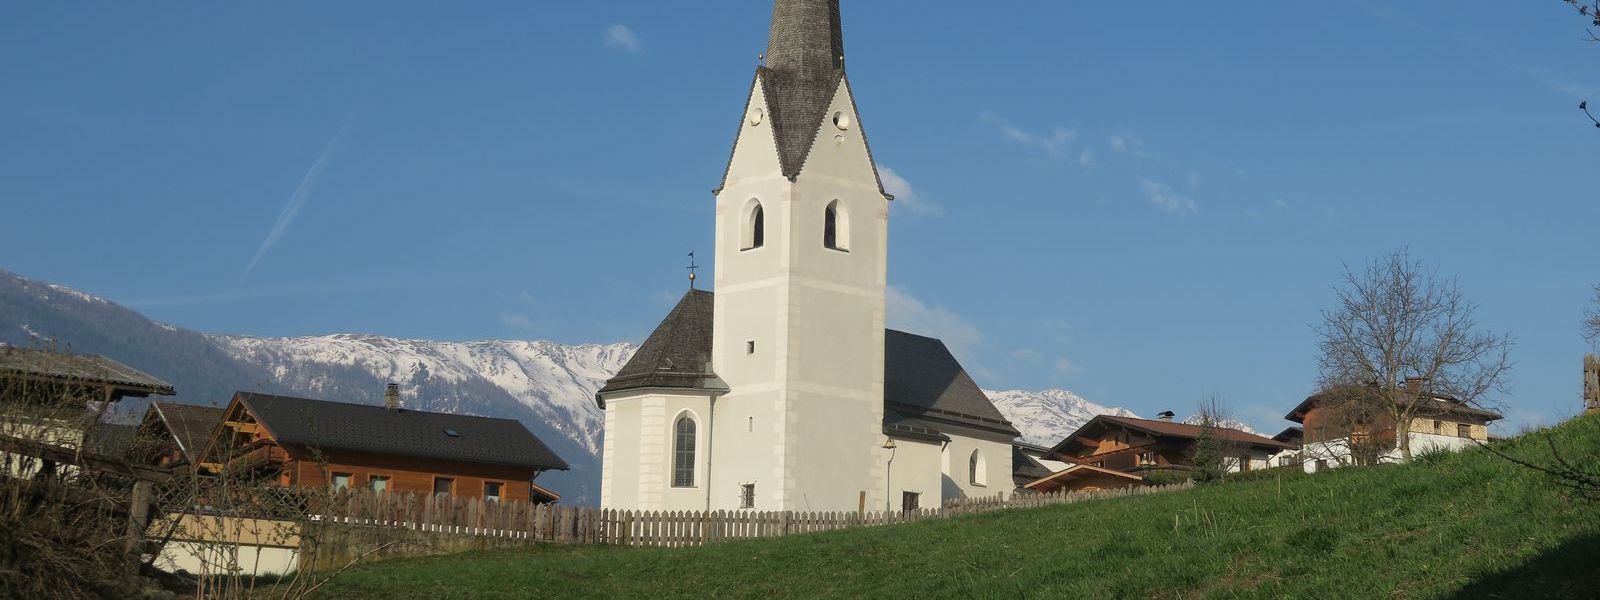 Kirche vor einer grünen Wiese vor blauem Himmel. Dahinter schneebedeckte Berge